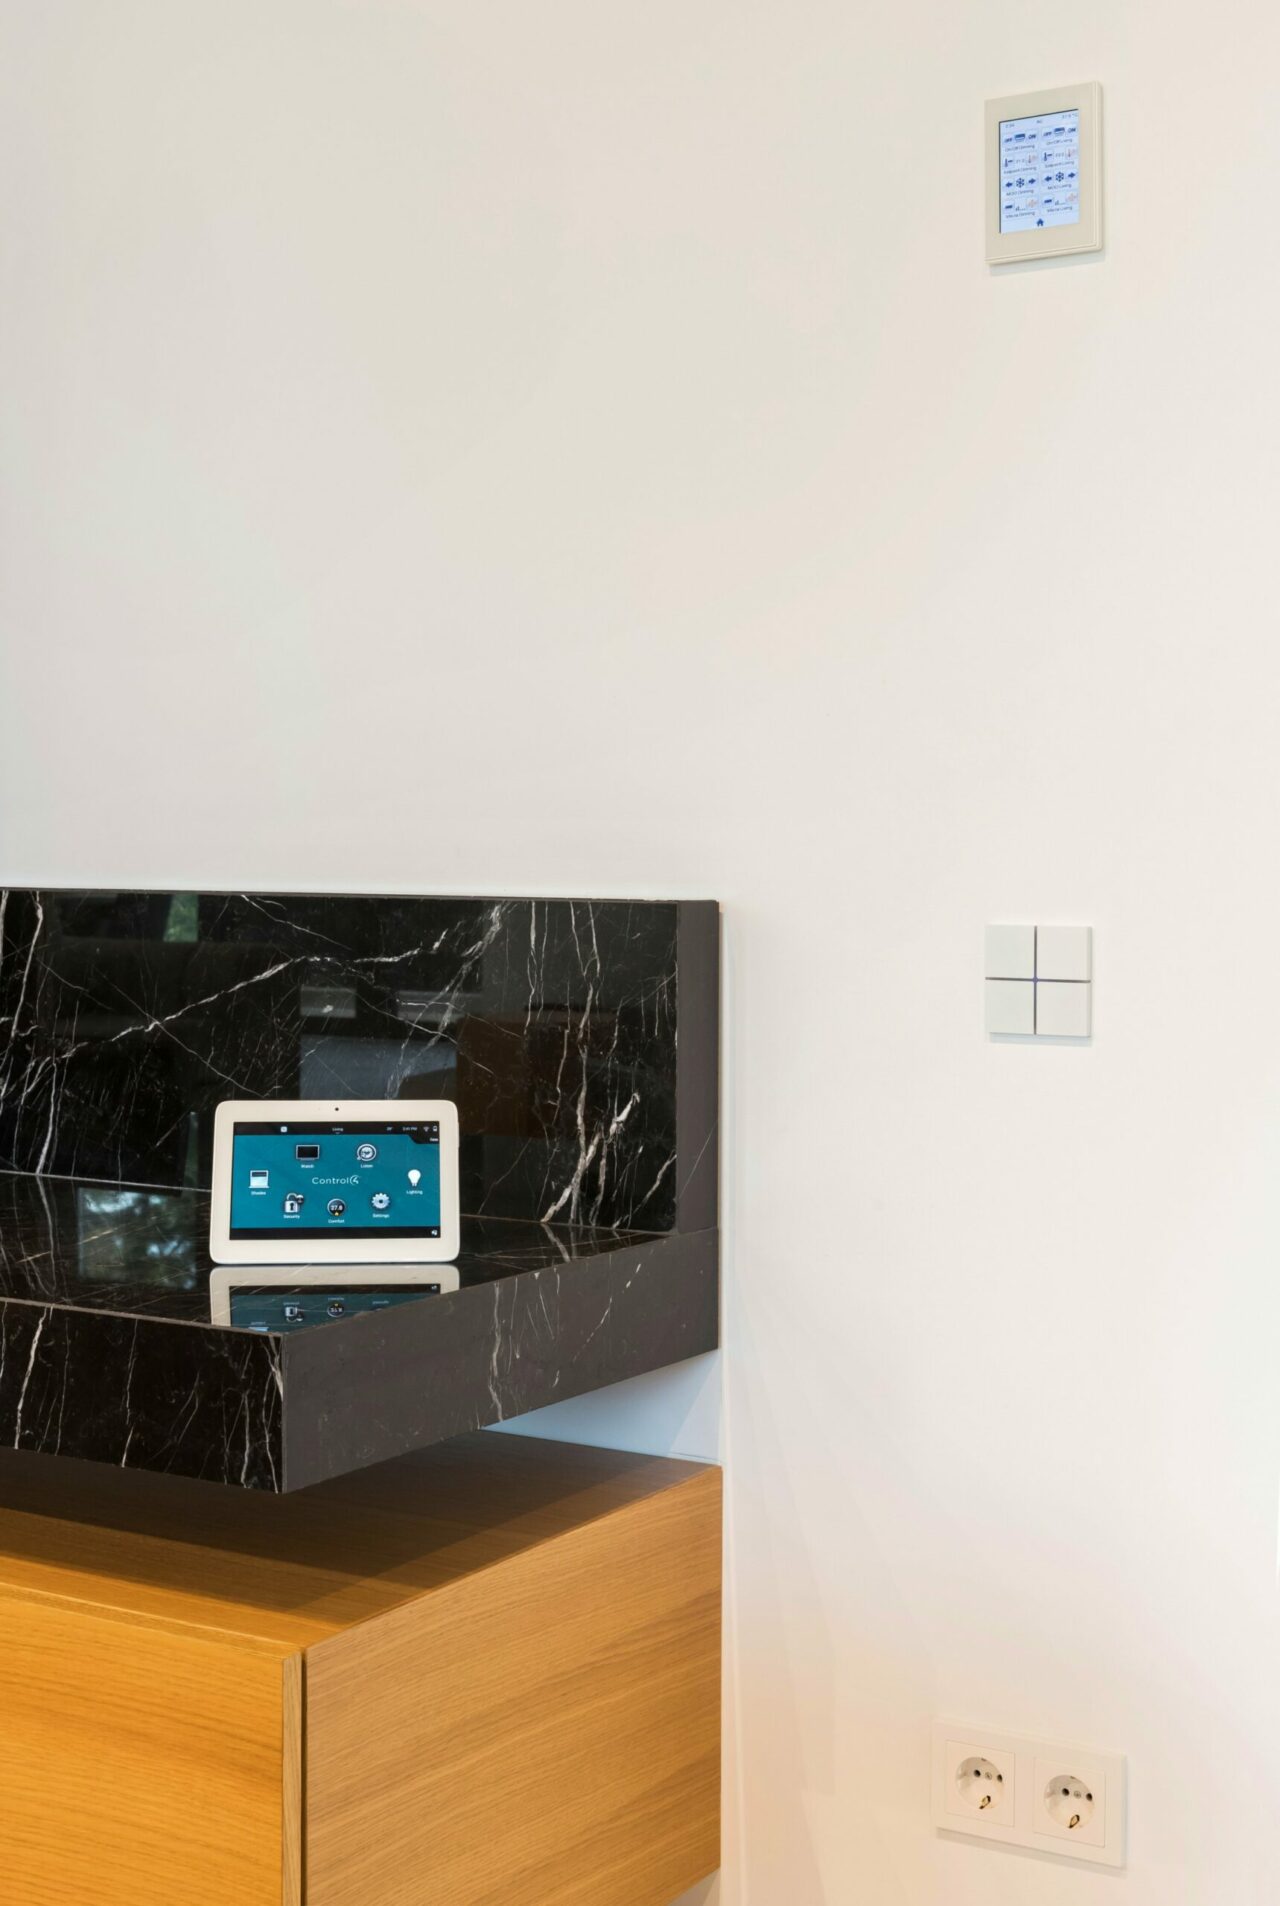 Die Touchscreen-Elemente gibt es für die Wand und als Tablet für die Bedienung am Tisch oder auf der Couch.